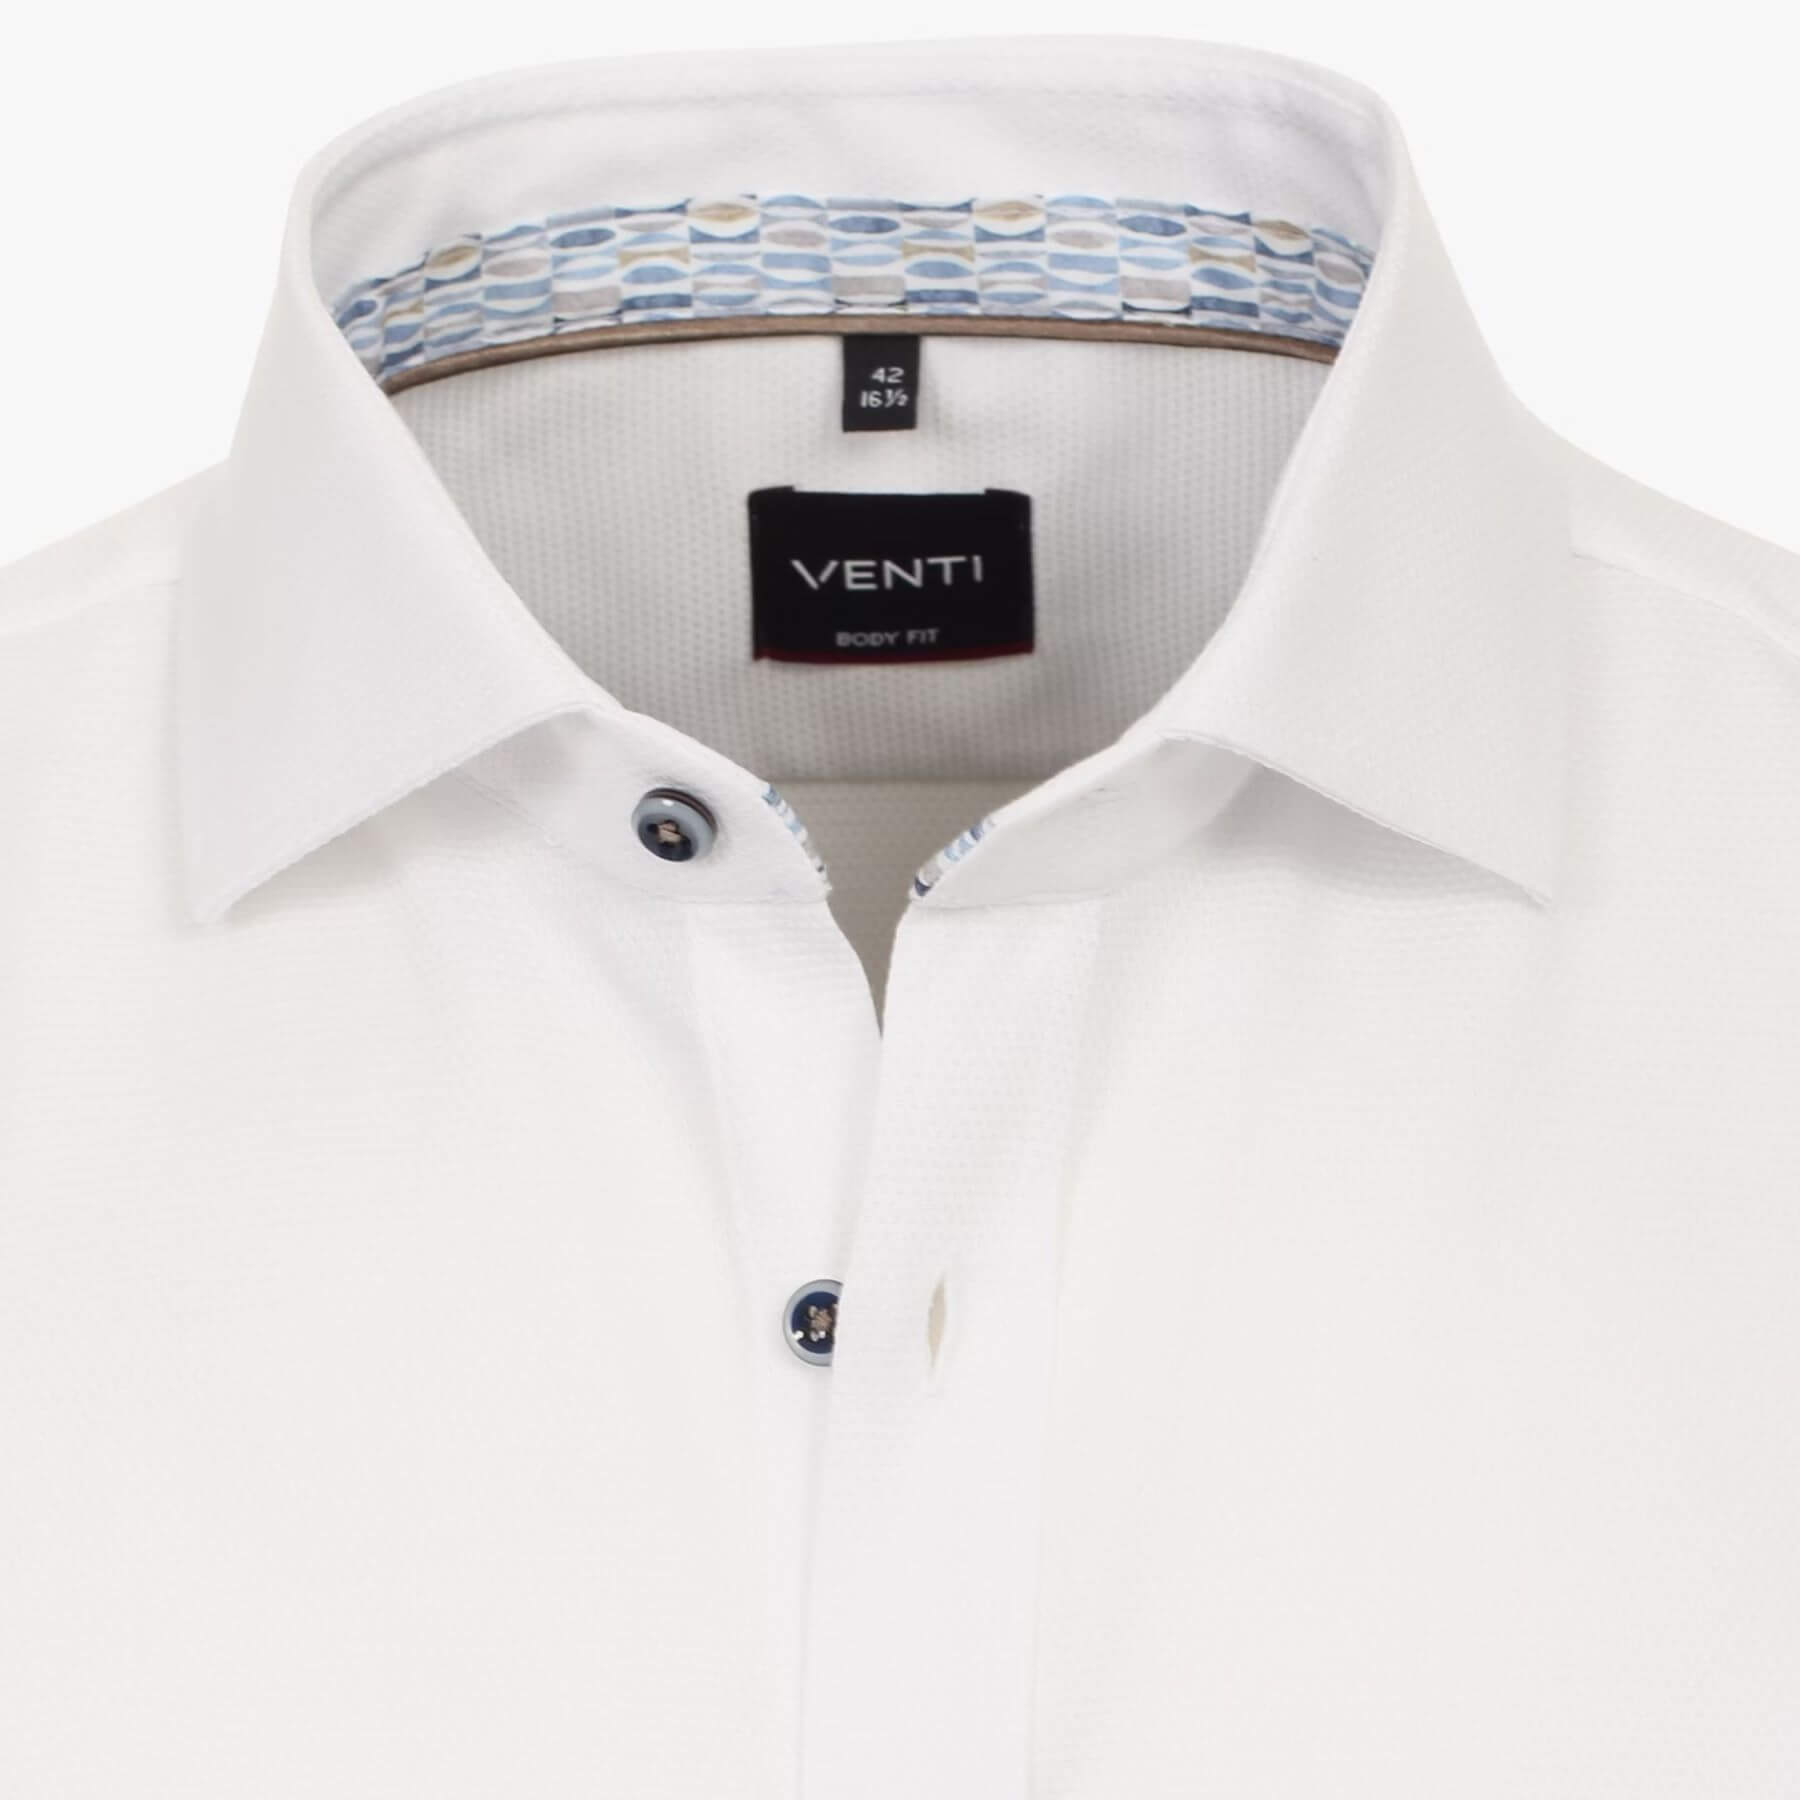 Сорочка мужская Venti Body Fit 144211200-000 белая из фактурной ткани